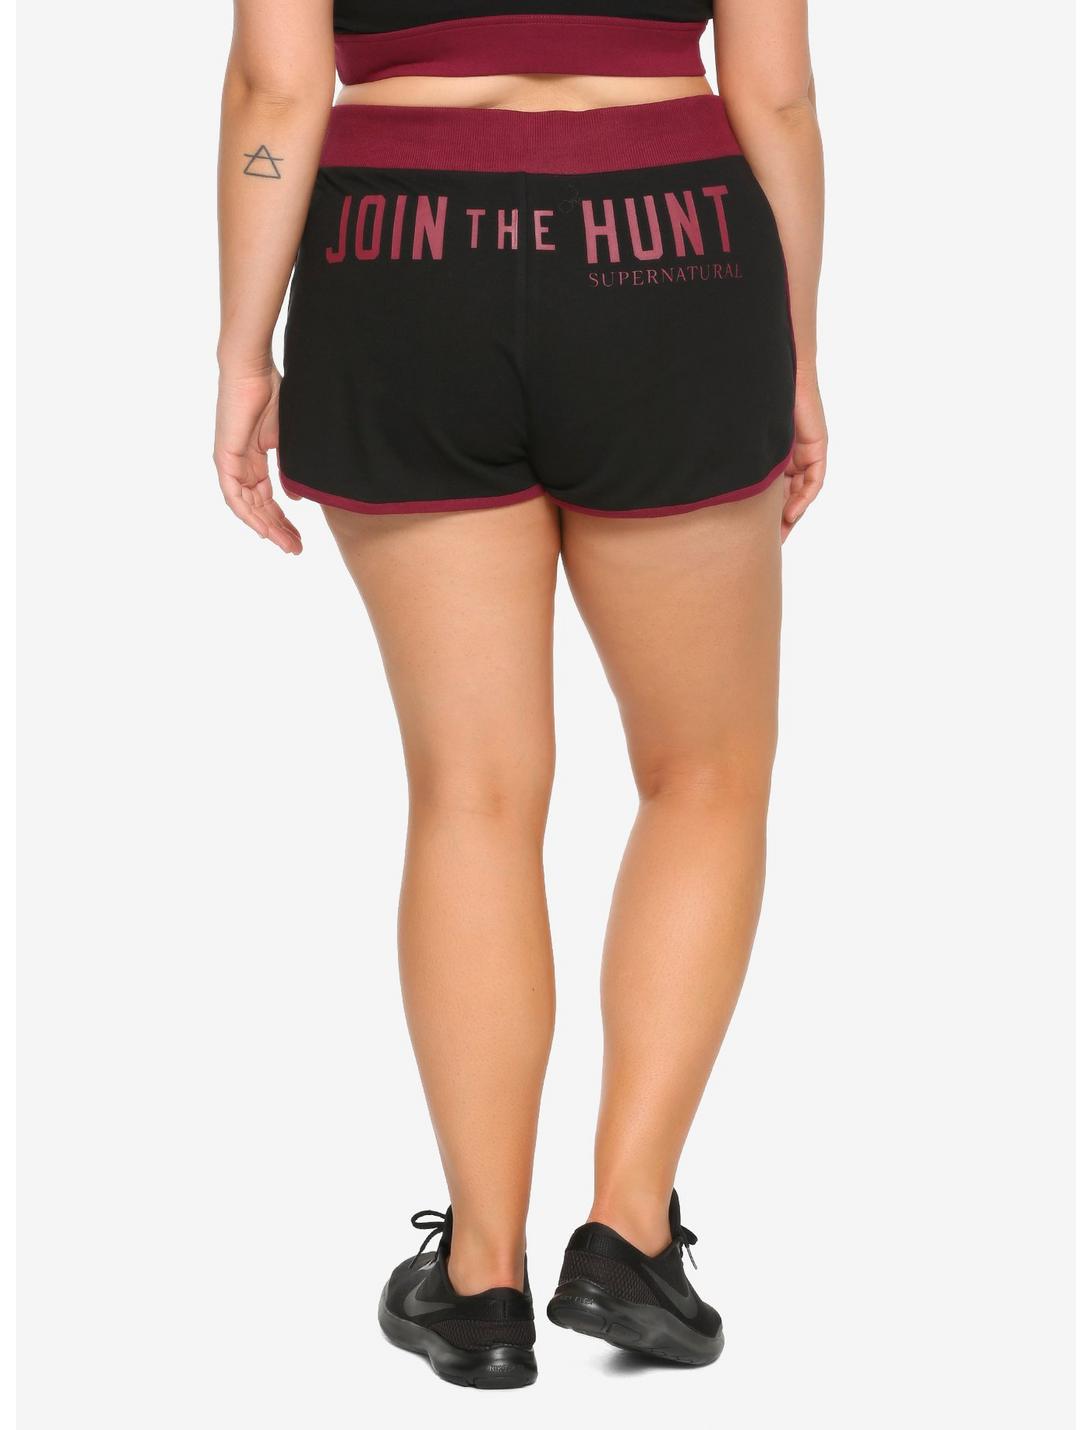 Supernatural Maroon & Black Join The Hunt Girls Soft Shorts Plus Size, BLACK, hi-res